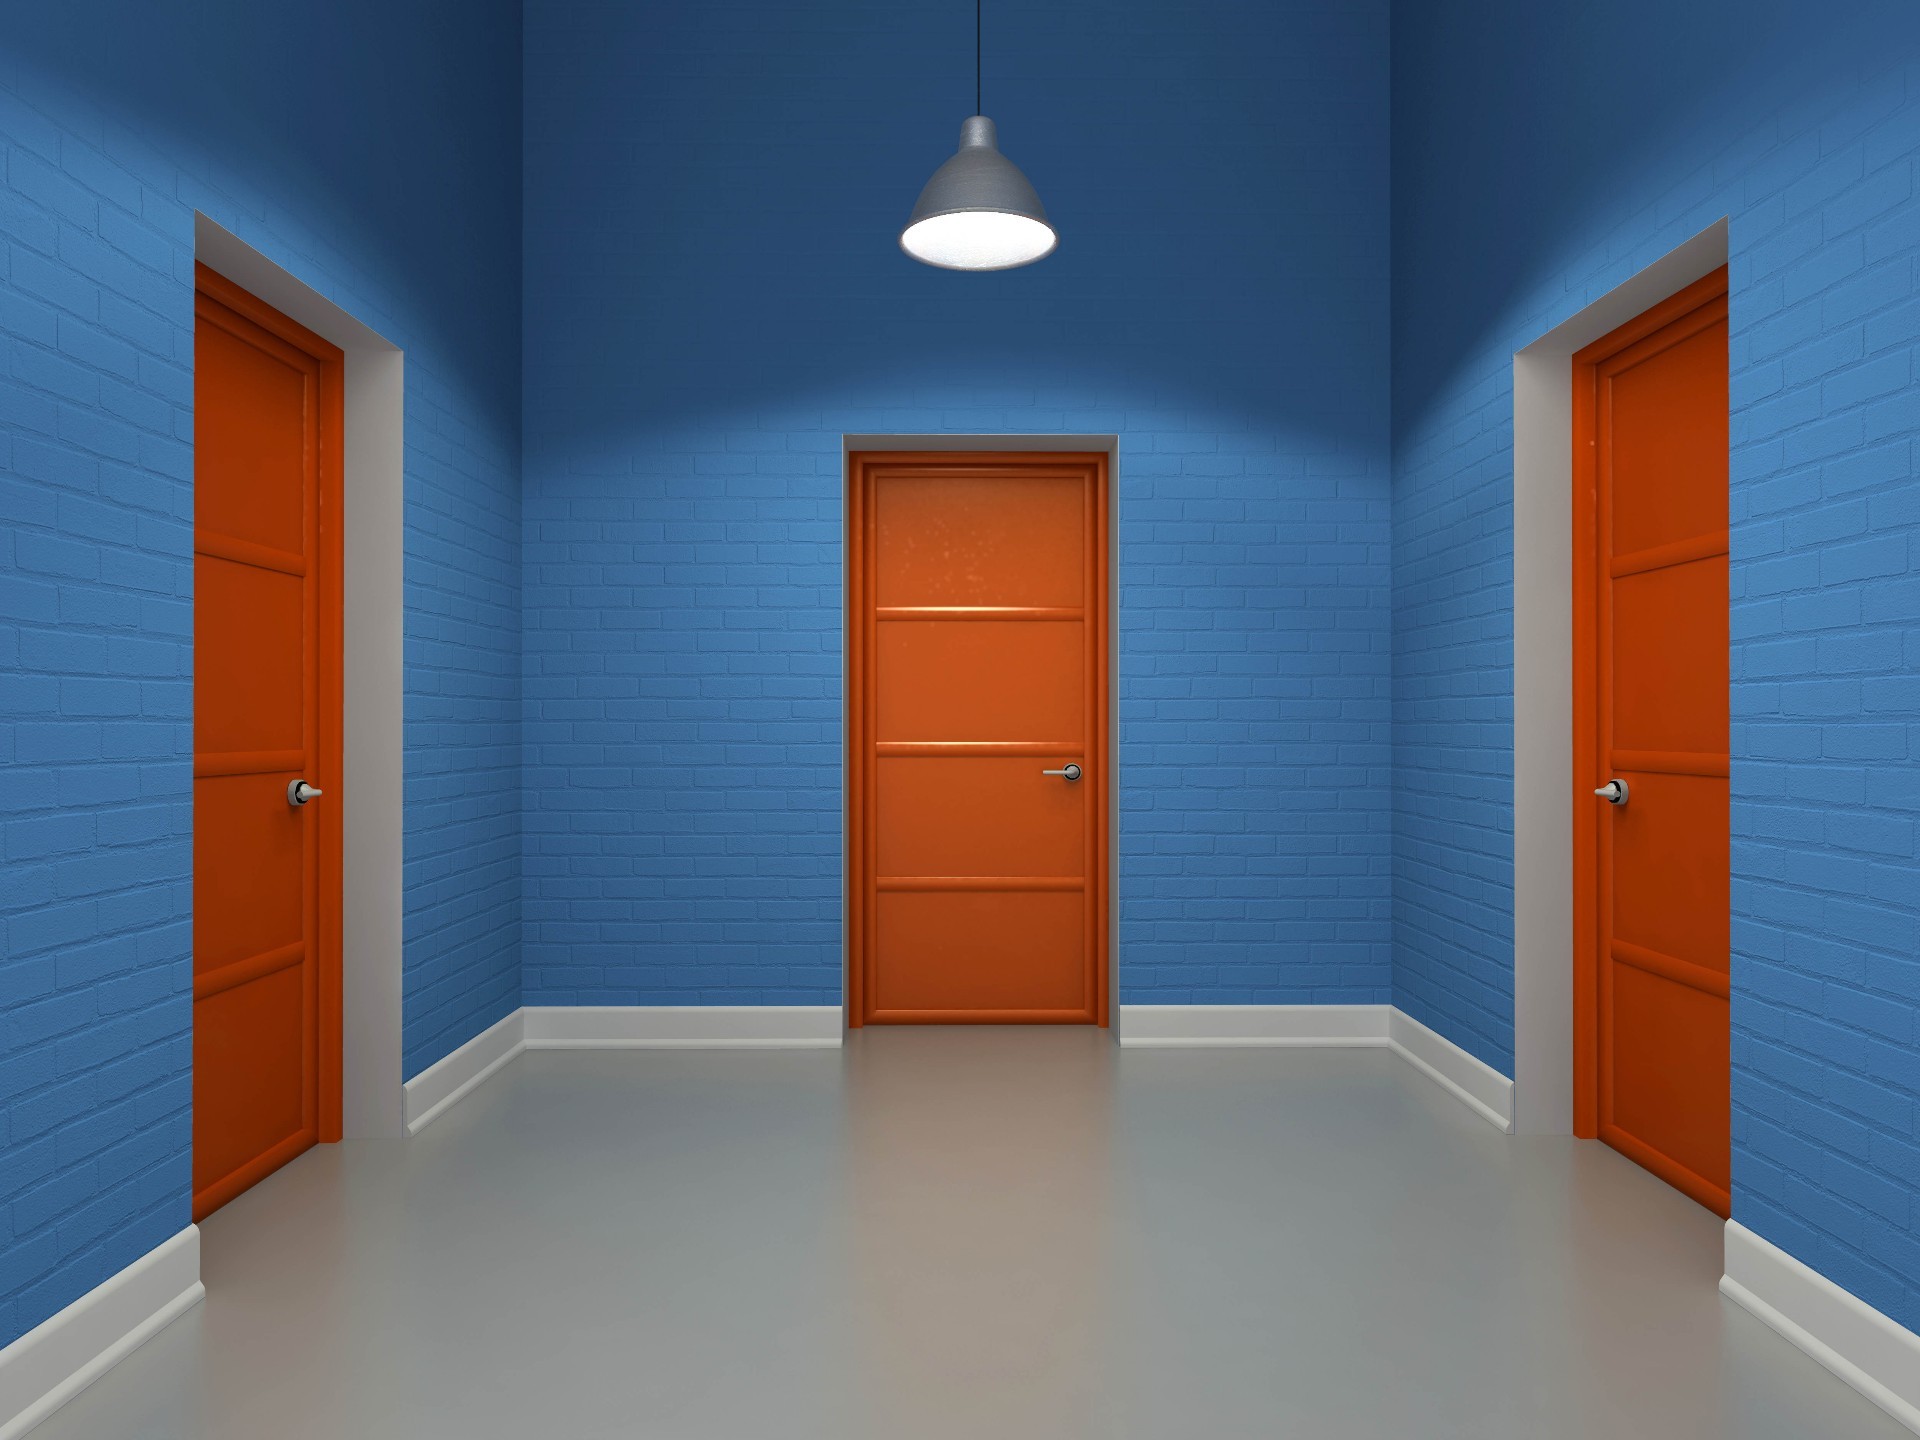 Three Doors In An Empty Room - Door Background Full Hd , HD Wallpaper & Backgrounds